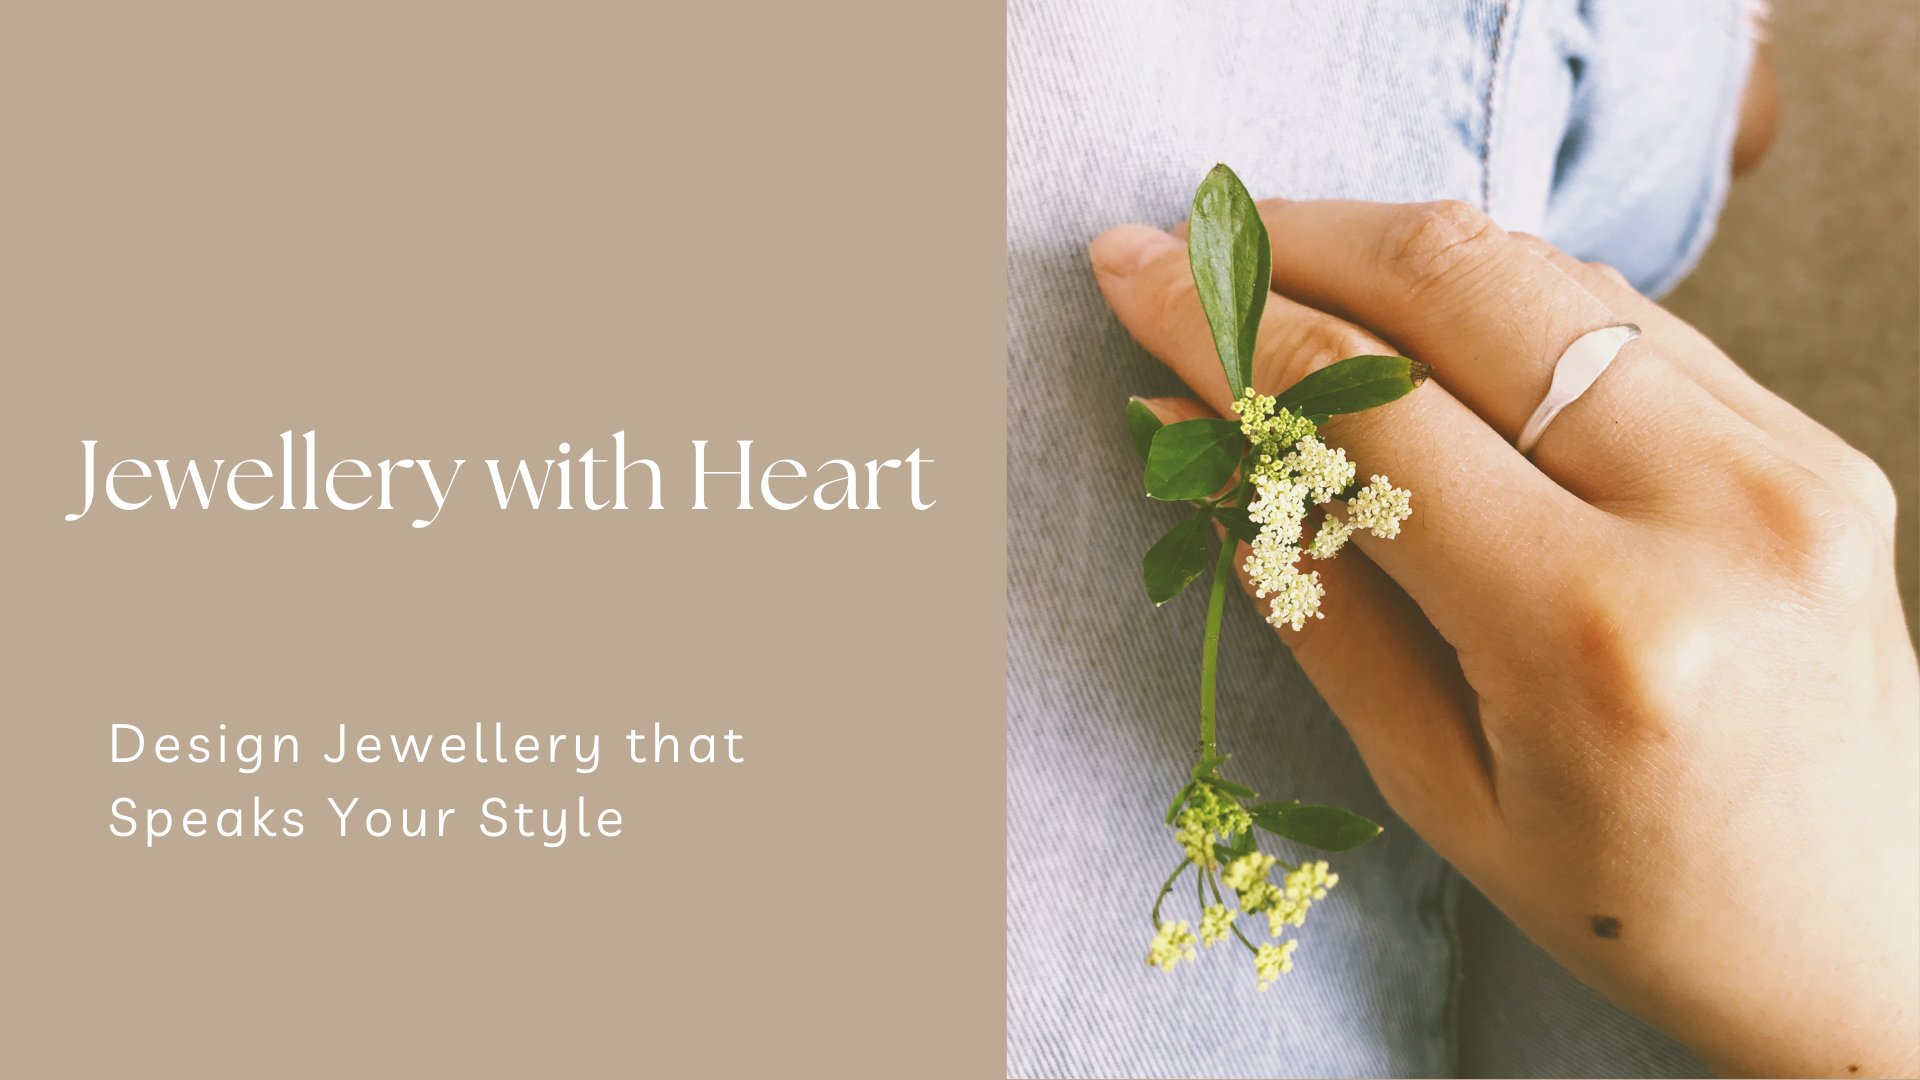 آموزش جواهرات با قلب - قطعات منحصر به فرد خود را با عشق بسازید